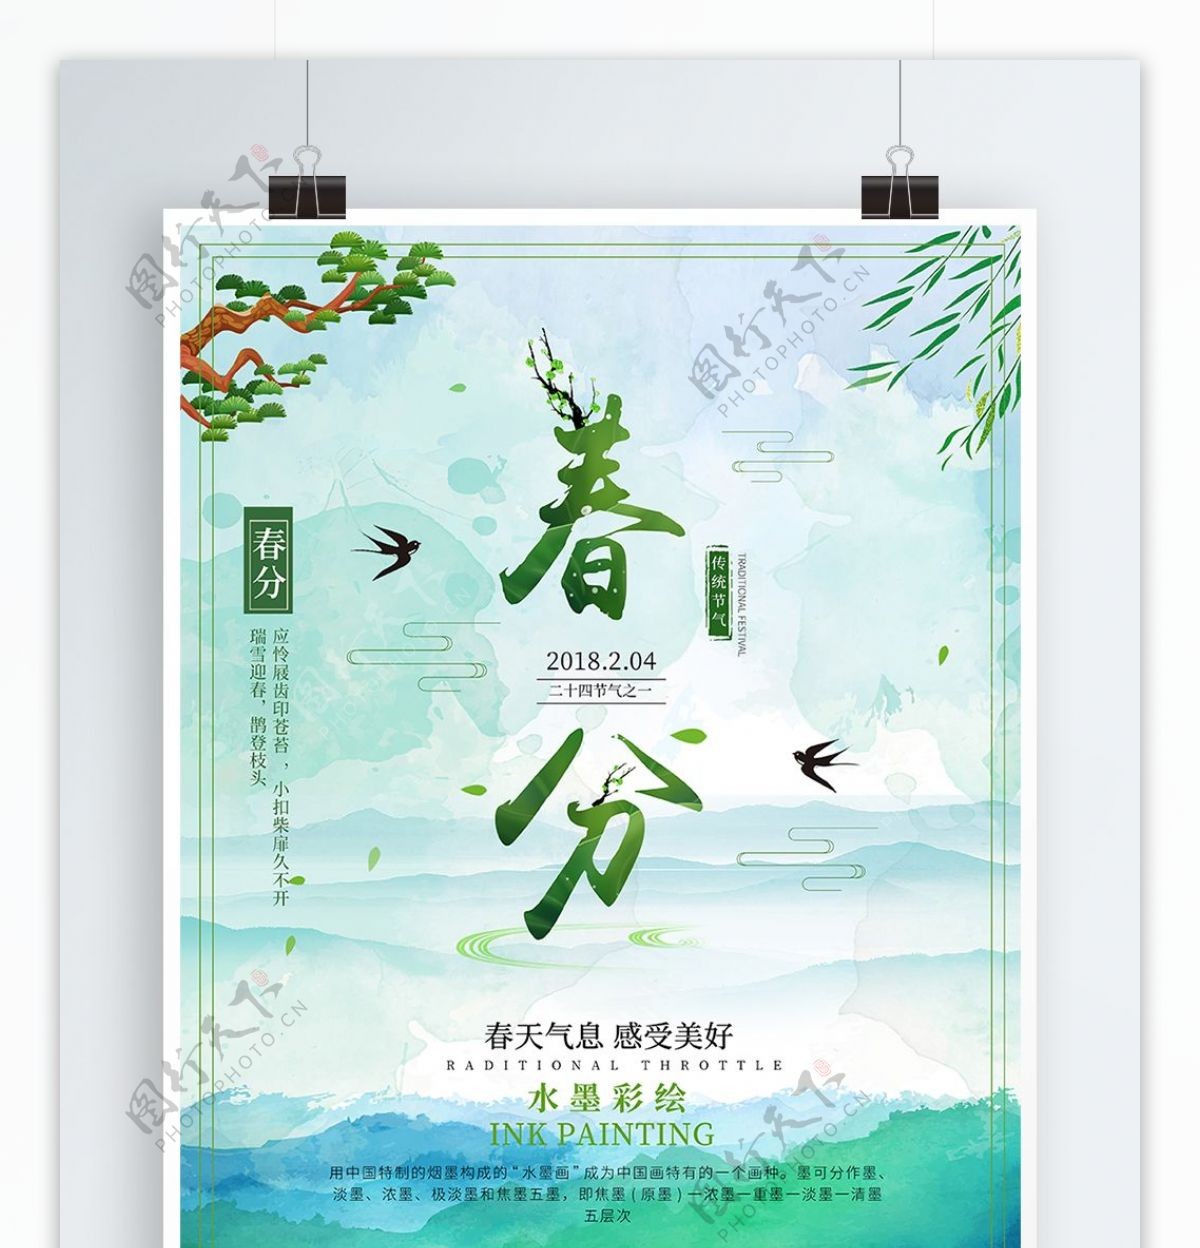 原创中国风小清新水墨彩绘节气海报